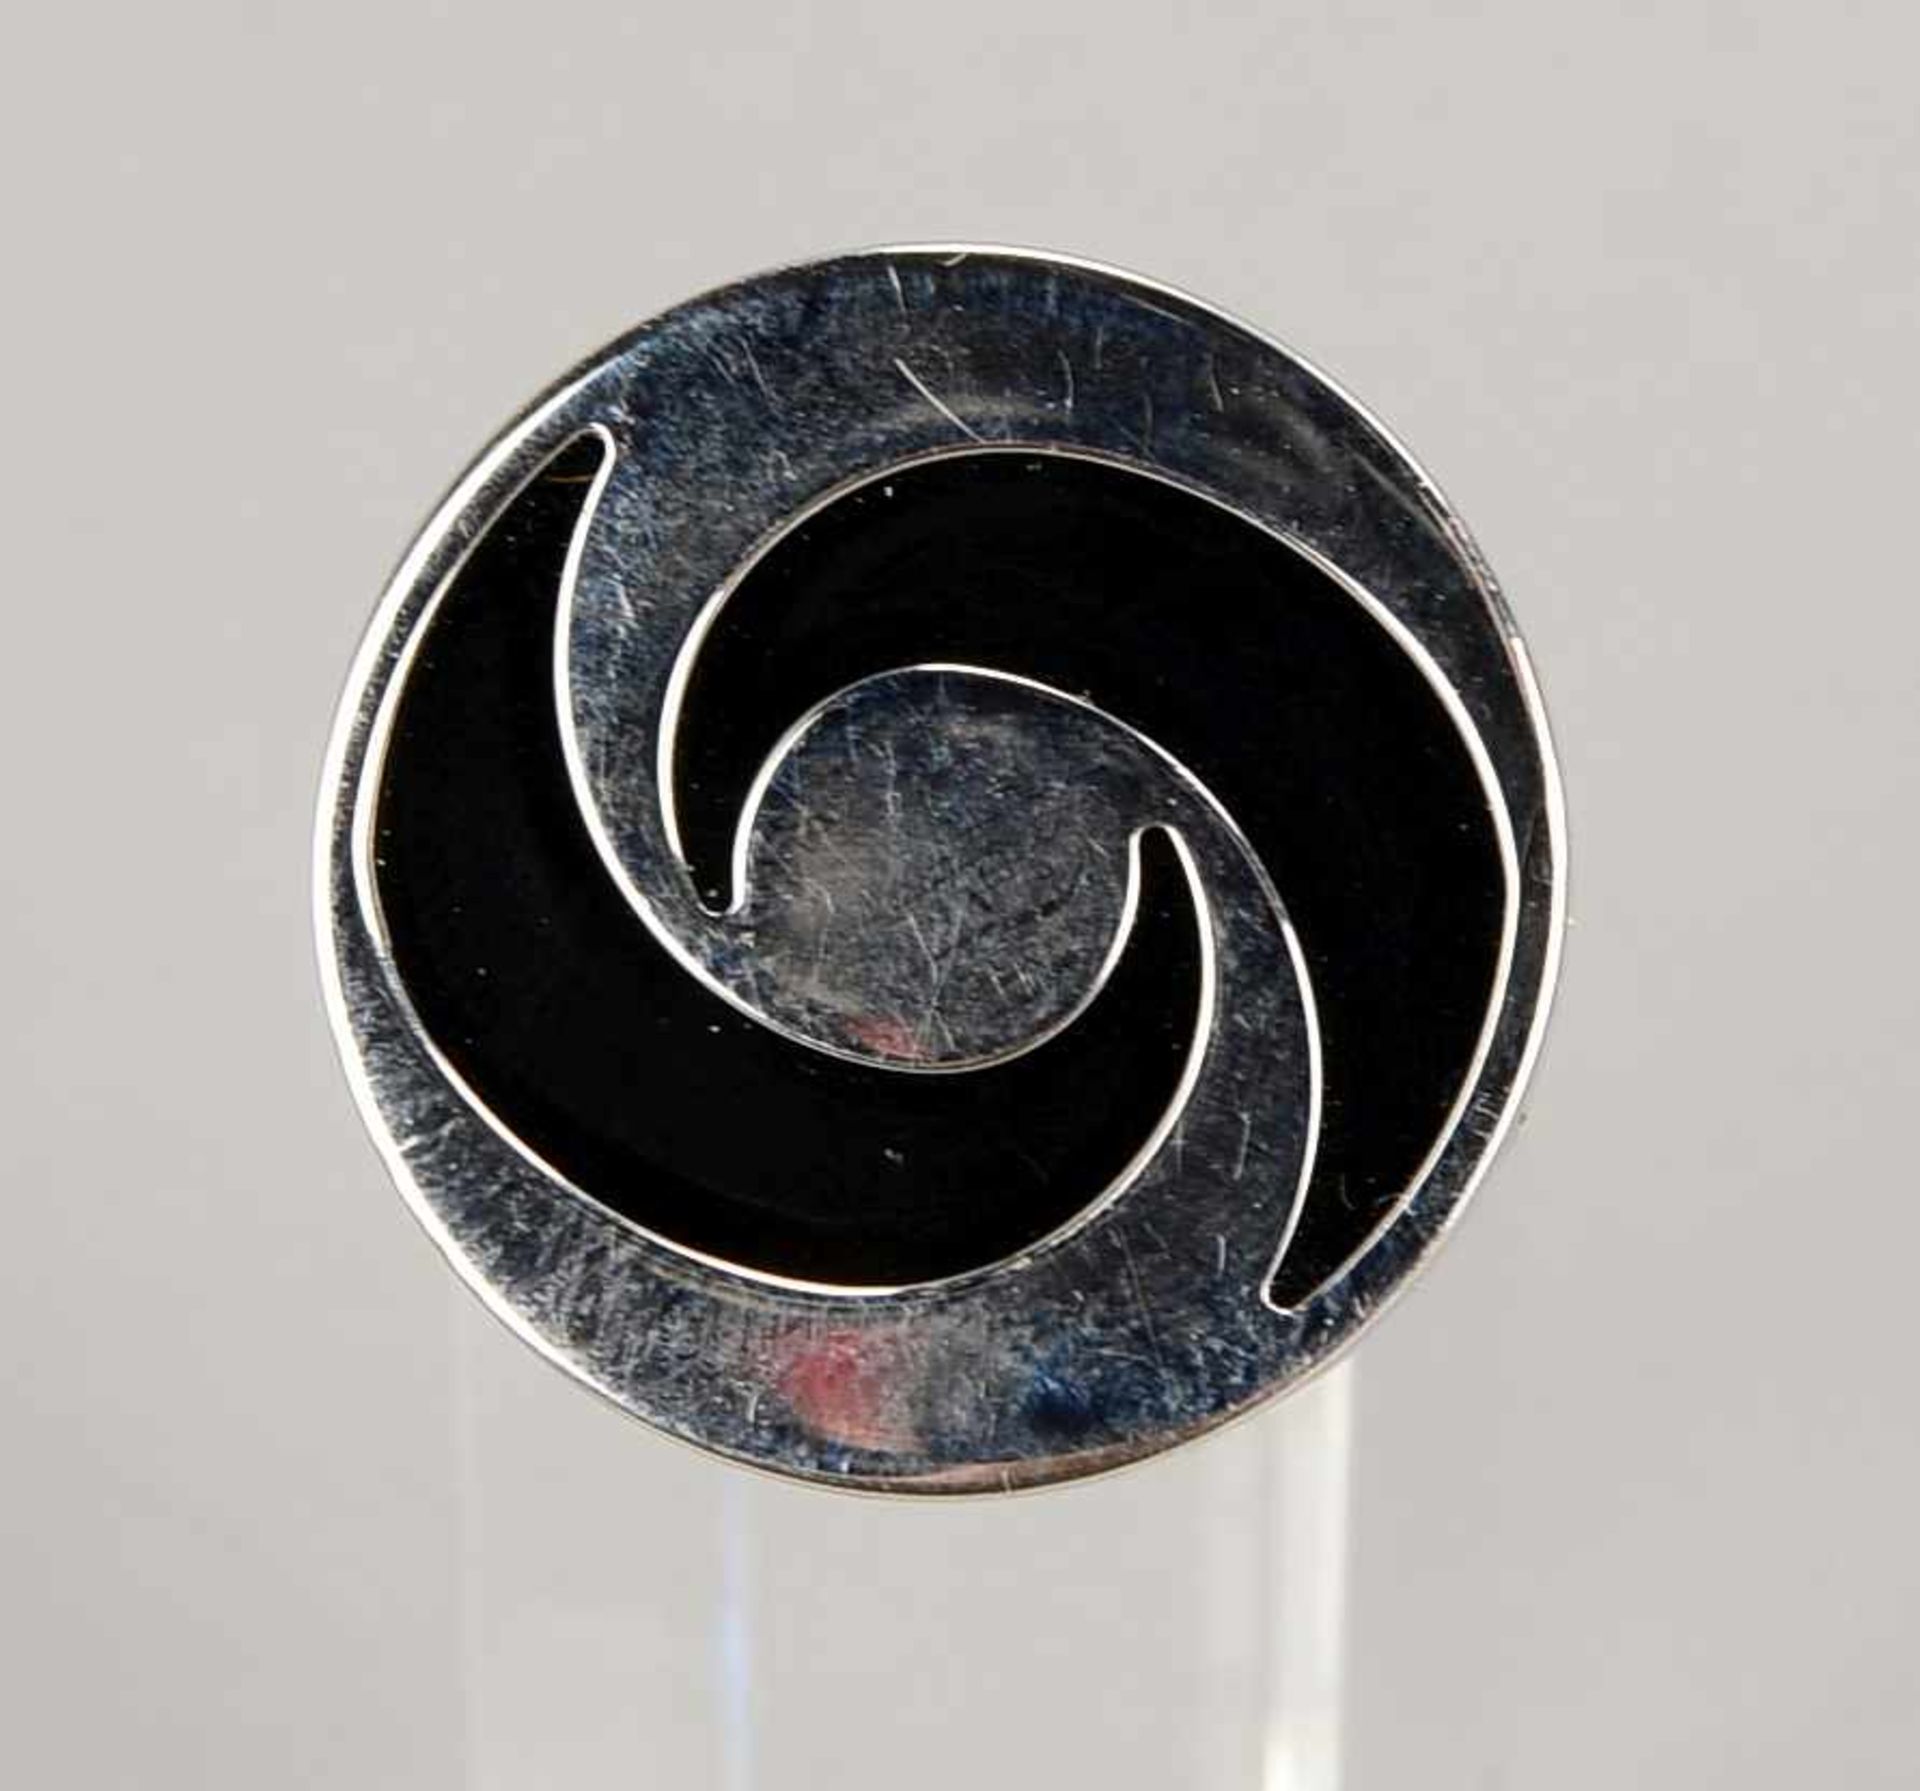 Bulgari-Ring, 750 WG, Ringkopf drehbar, mit gefasster Onyxplatte, seitlich mit graviertem ' - Bild 2 aus 3